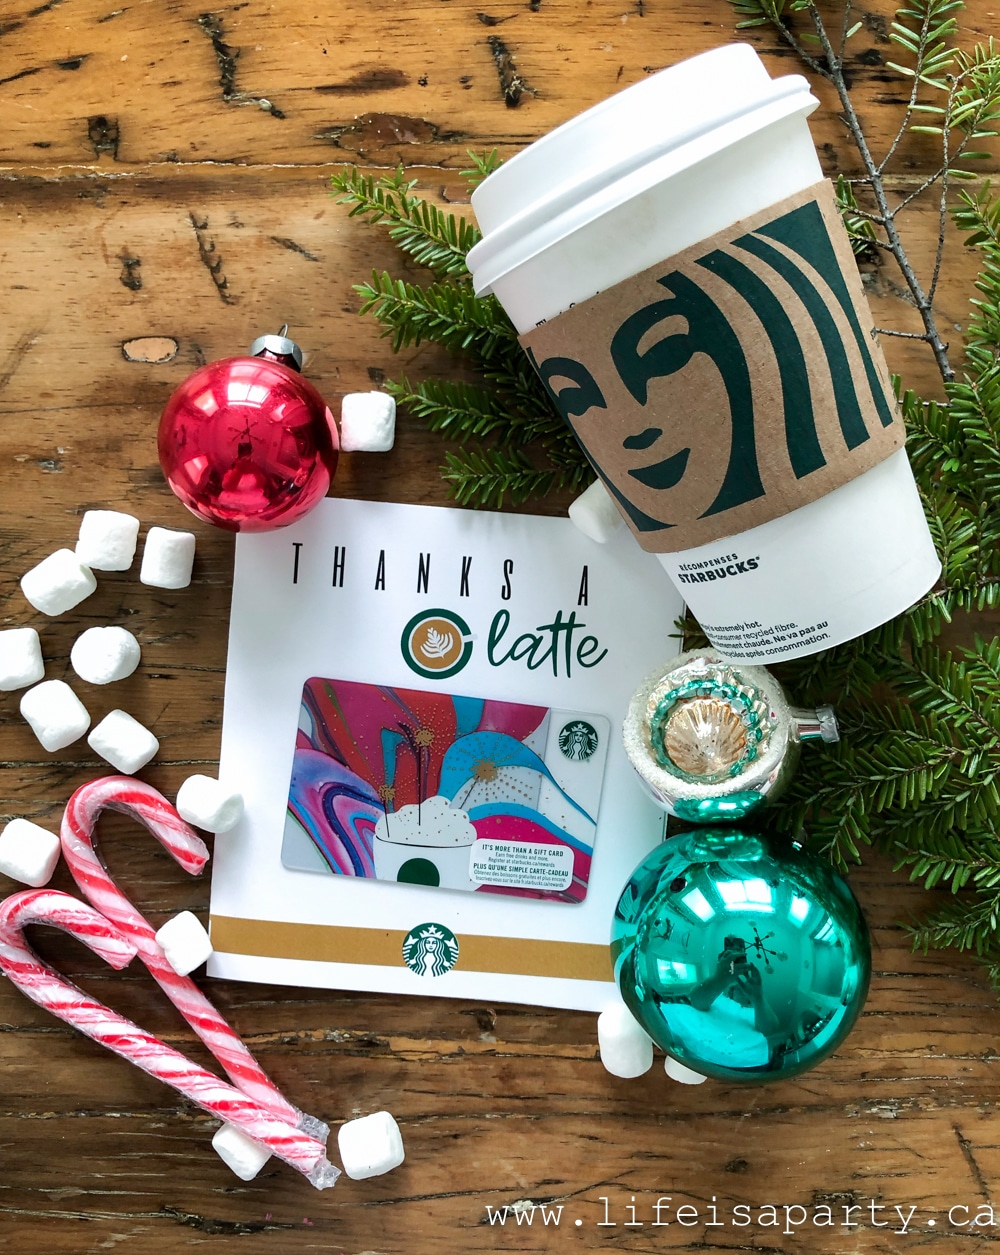 Printable Starbucks Gift Card Holder